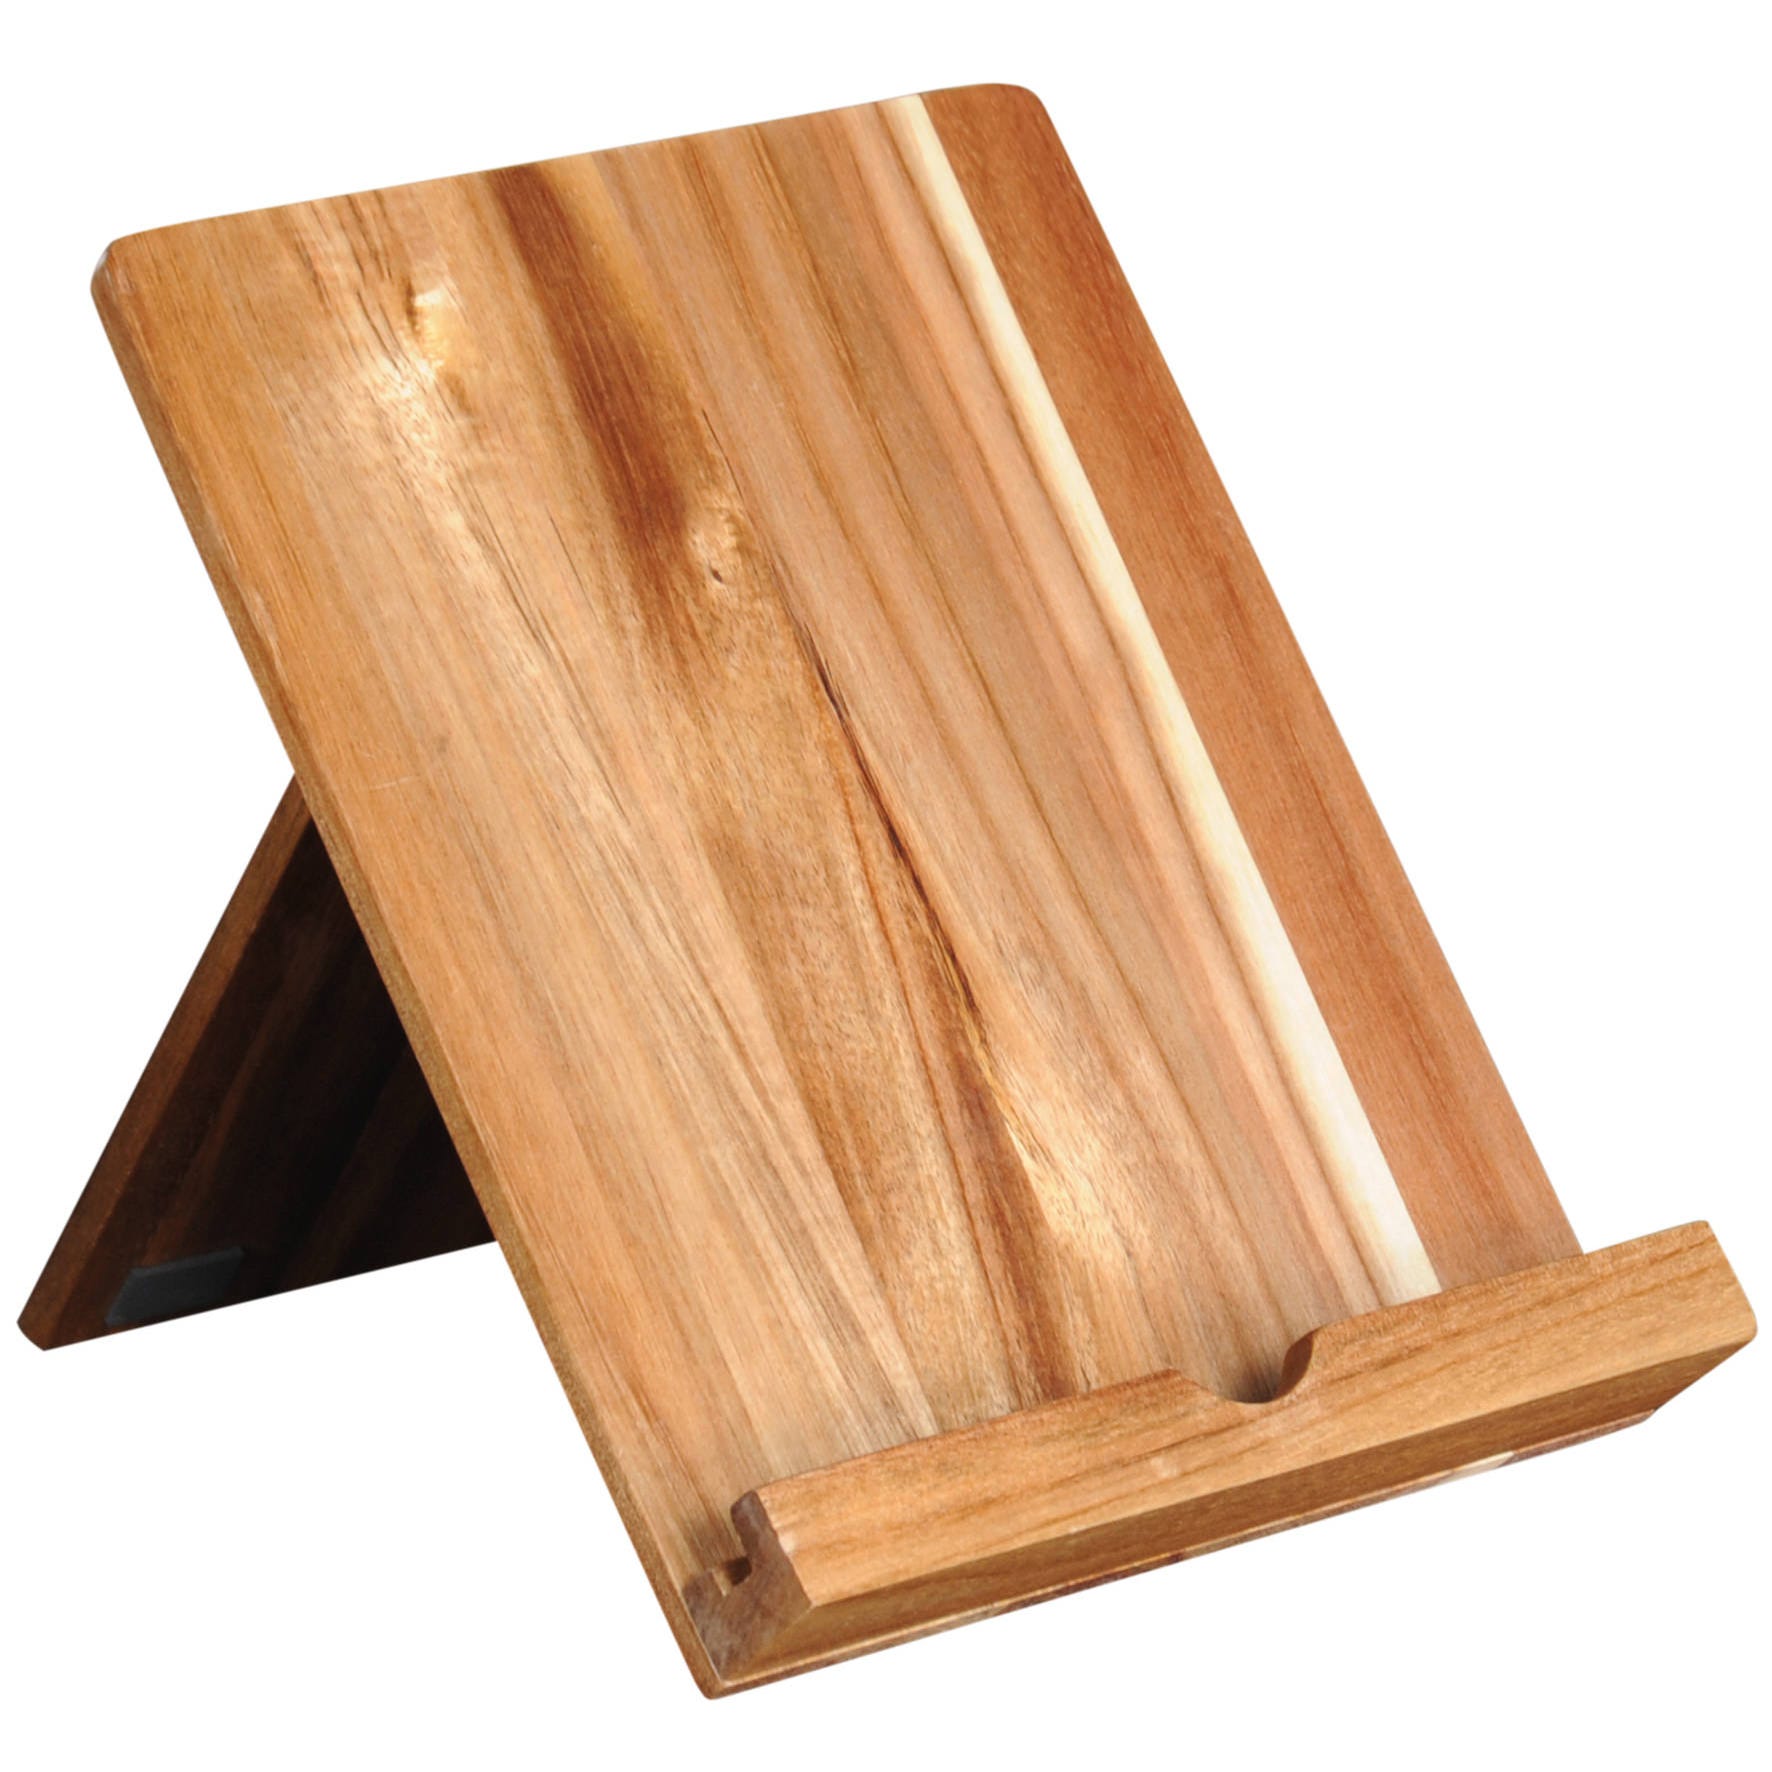 Support pour tablette ou livre de cuisine en bois